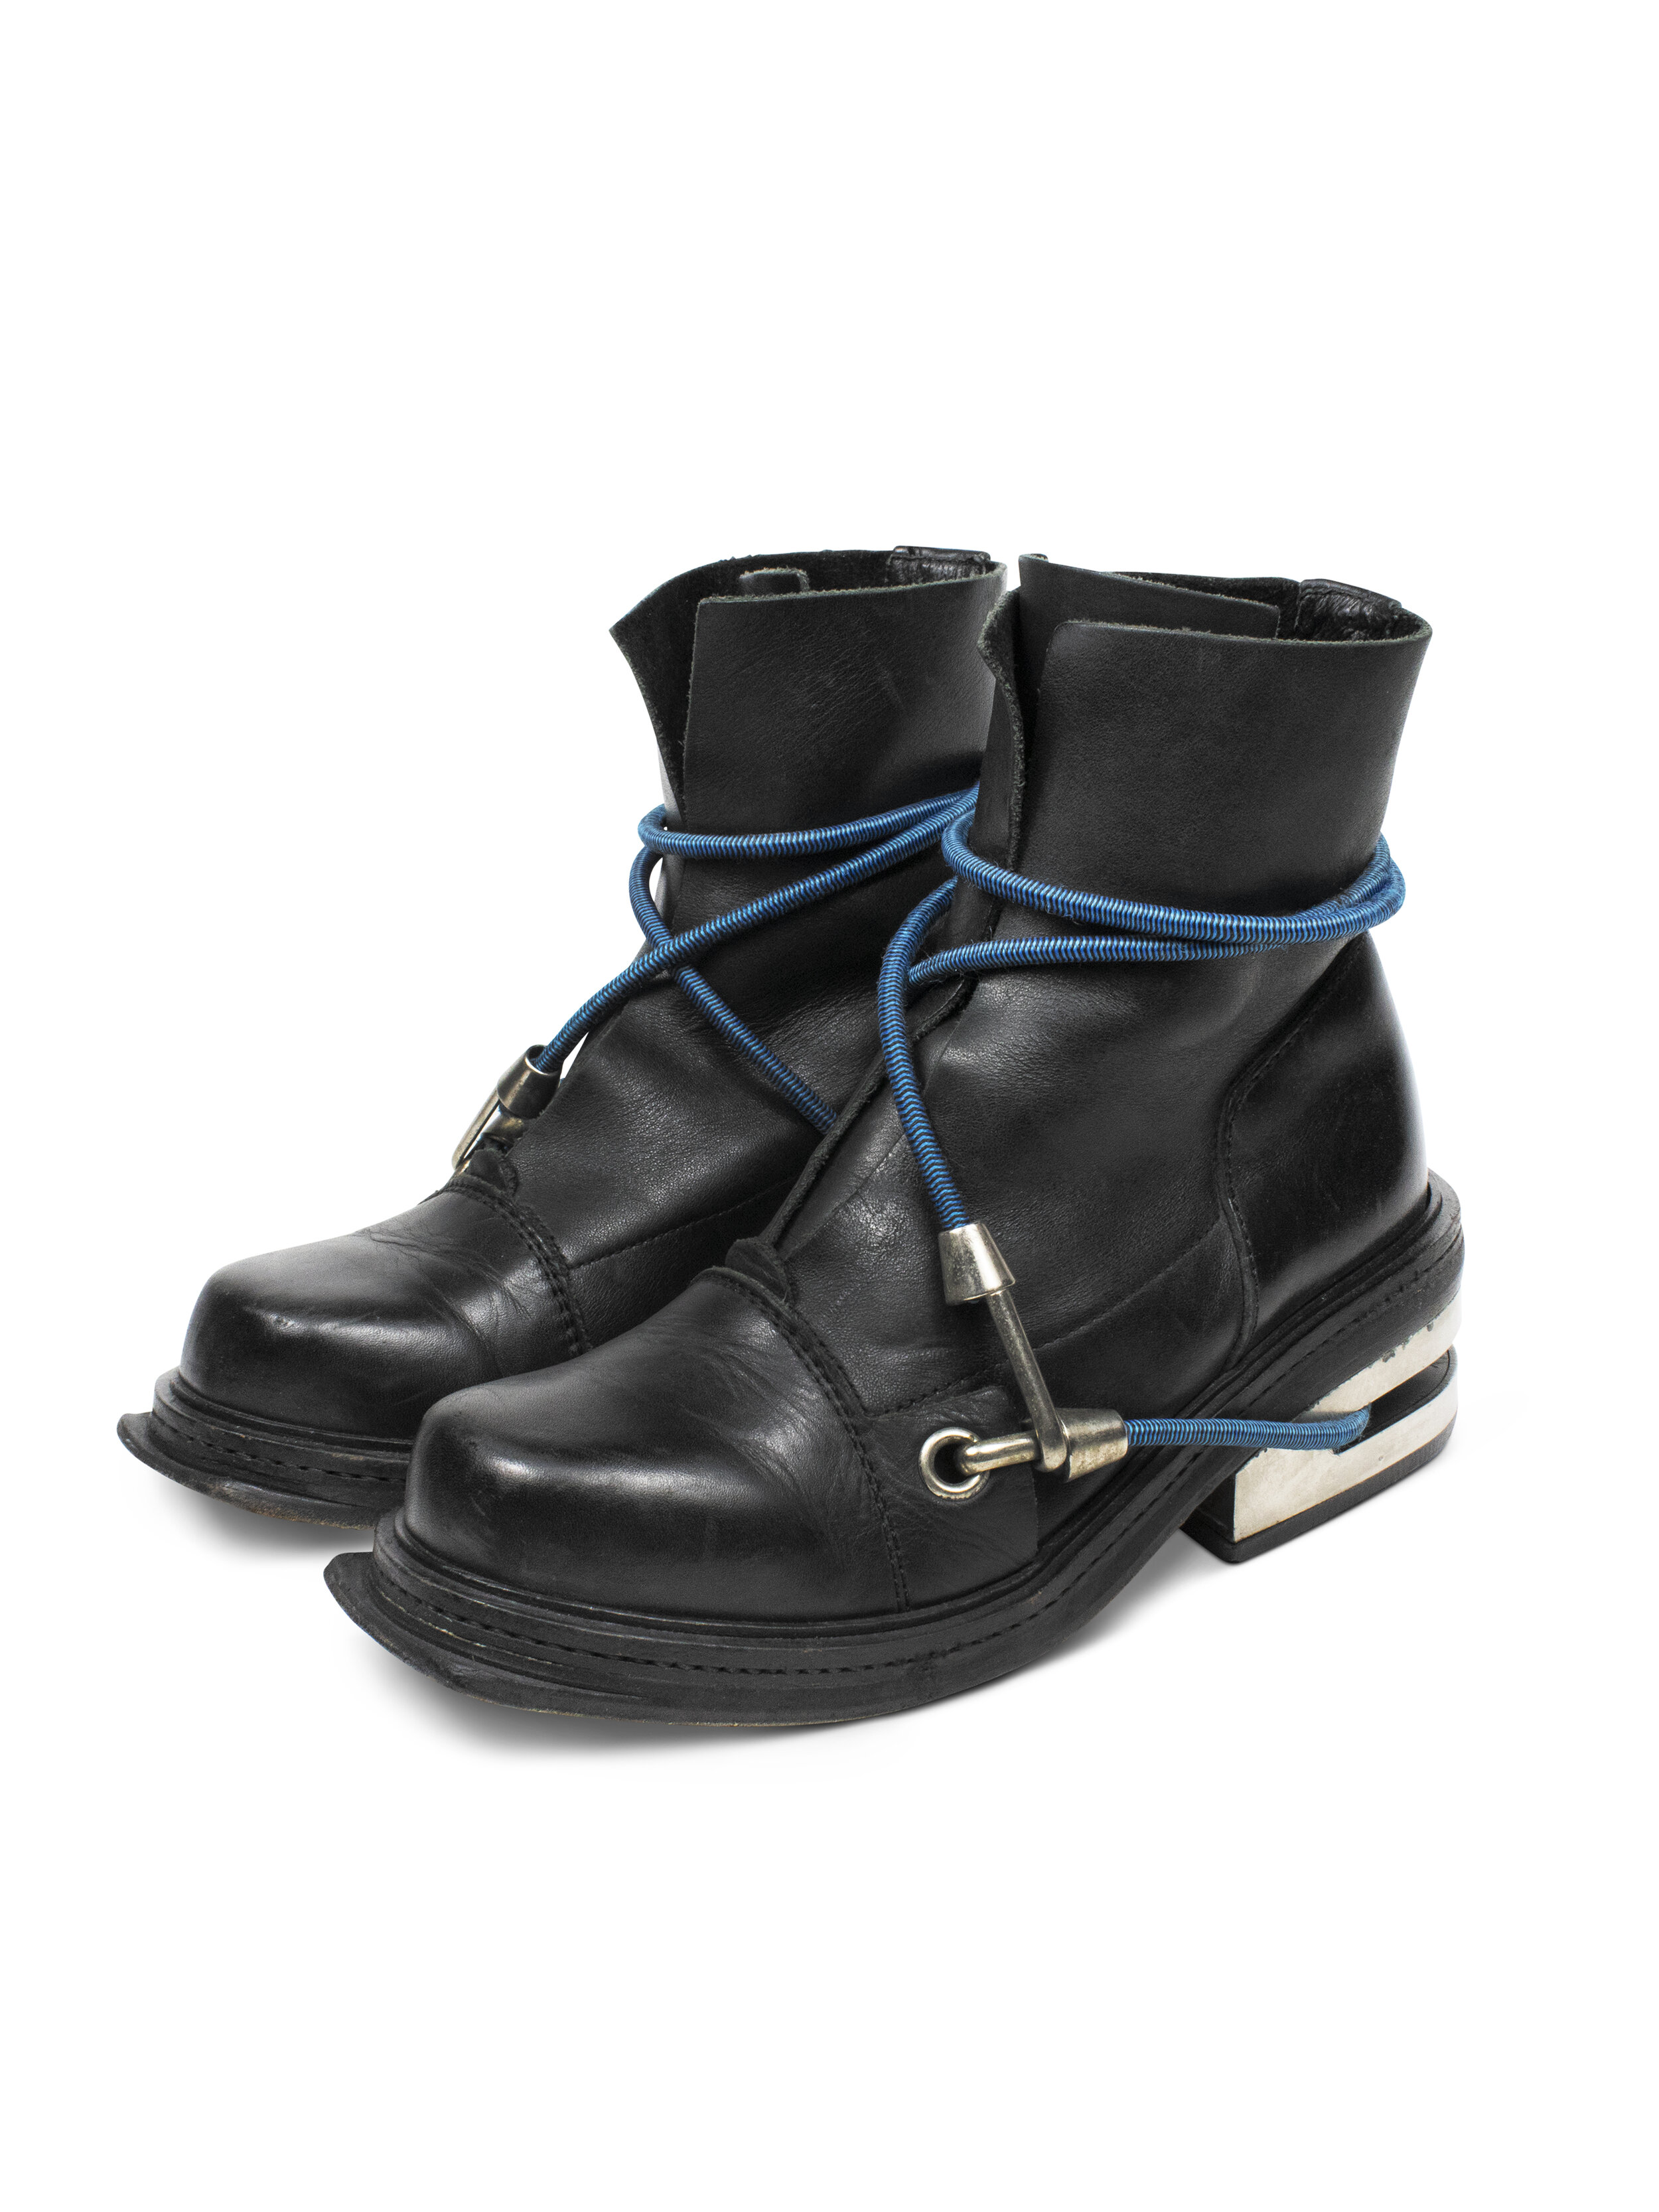 bikkemberg boots